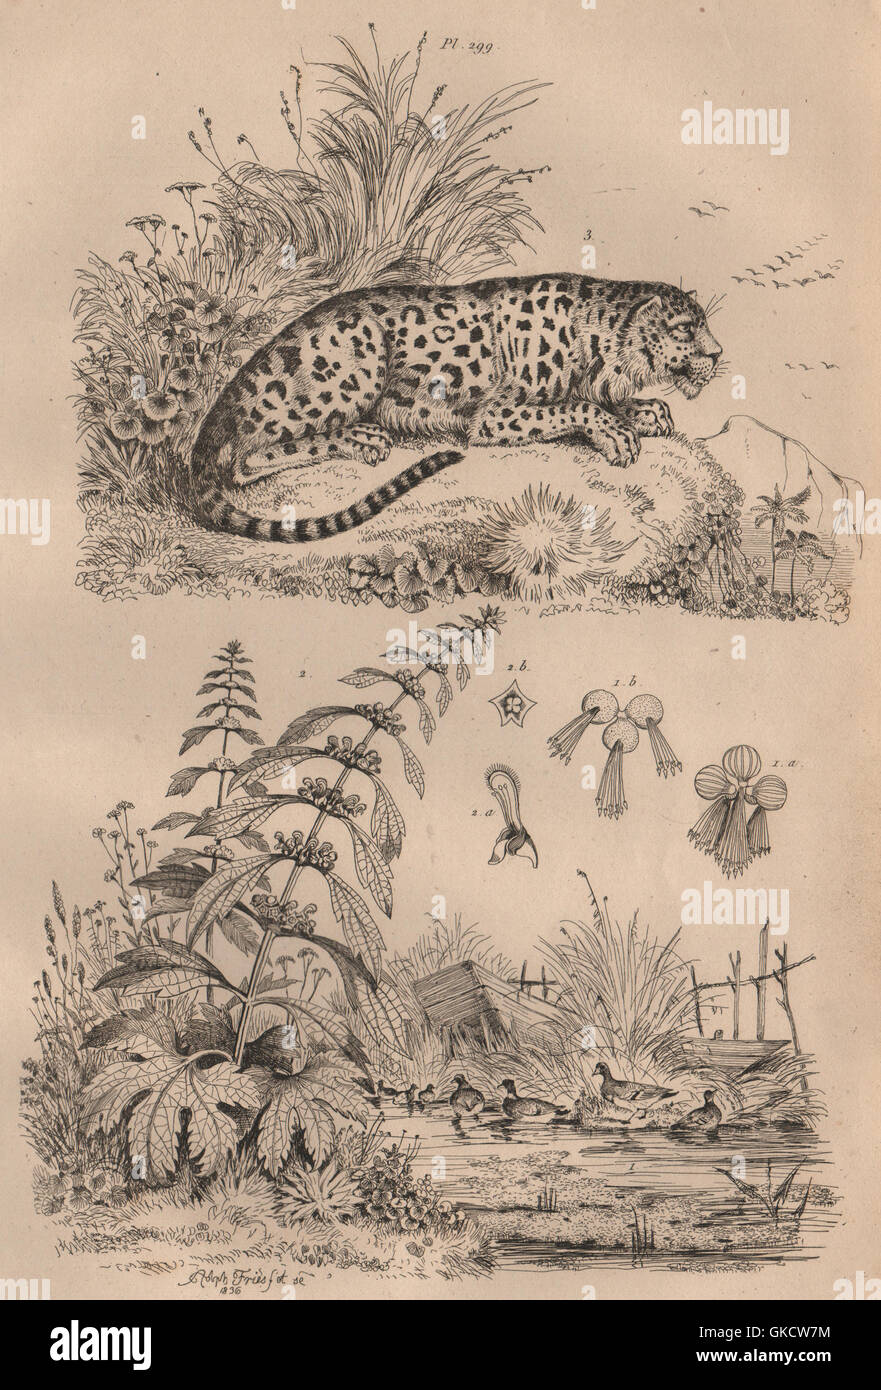 Leopardi: Lenticule (lenticchie d'acqua). Leonotis leonurus (leone la coda). Leopard, 1834 Foto Stock